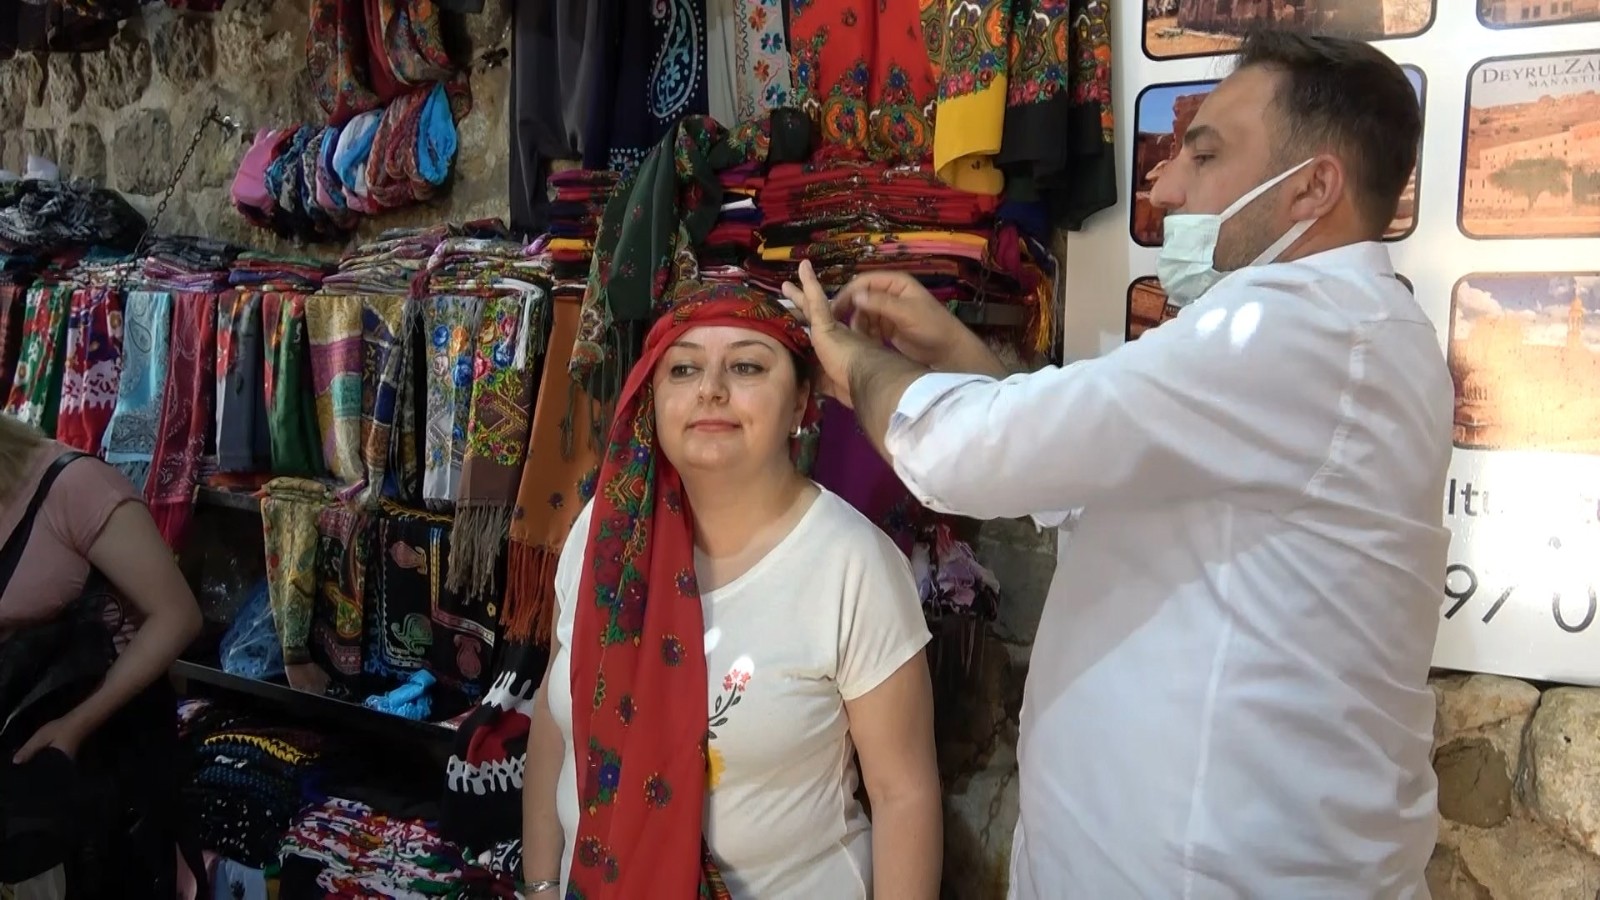 Mardin'e özgü şal bağlaması turistlerin ilgi odağı oldu - Mardin Haberleri